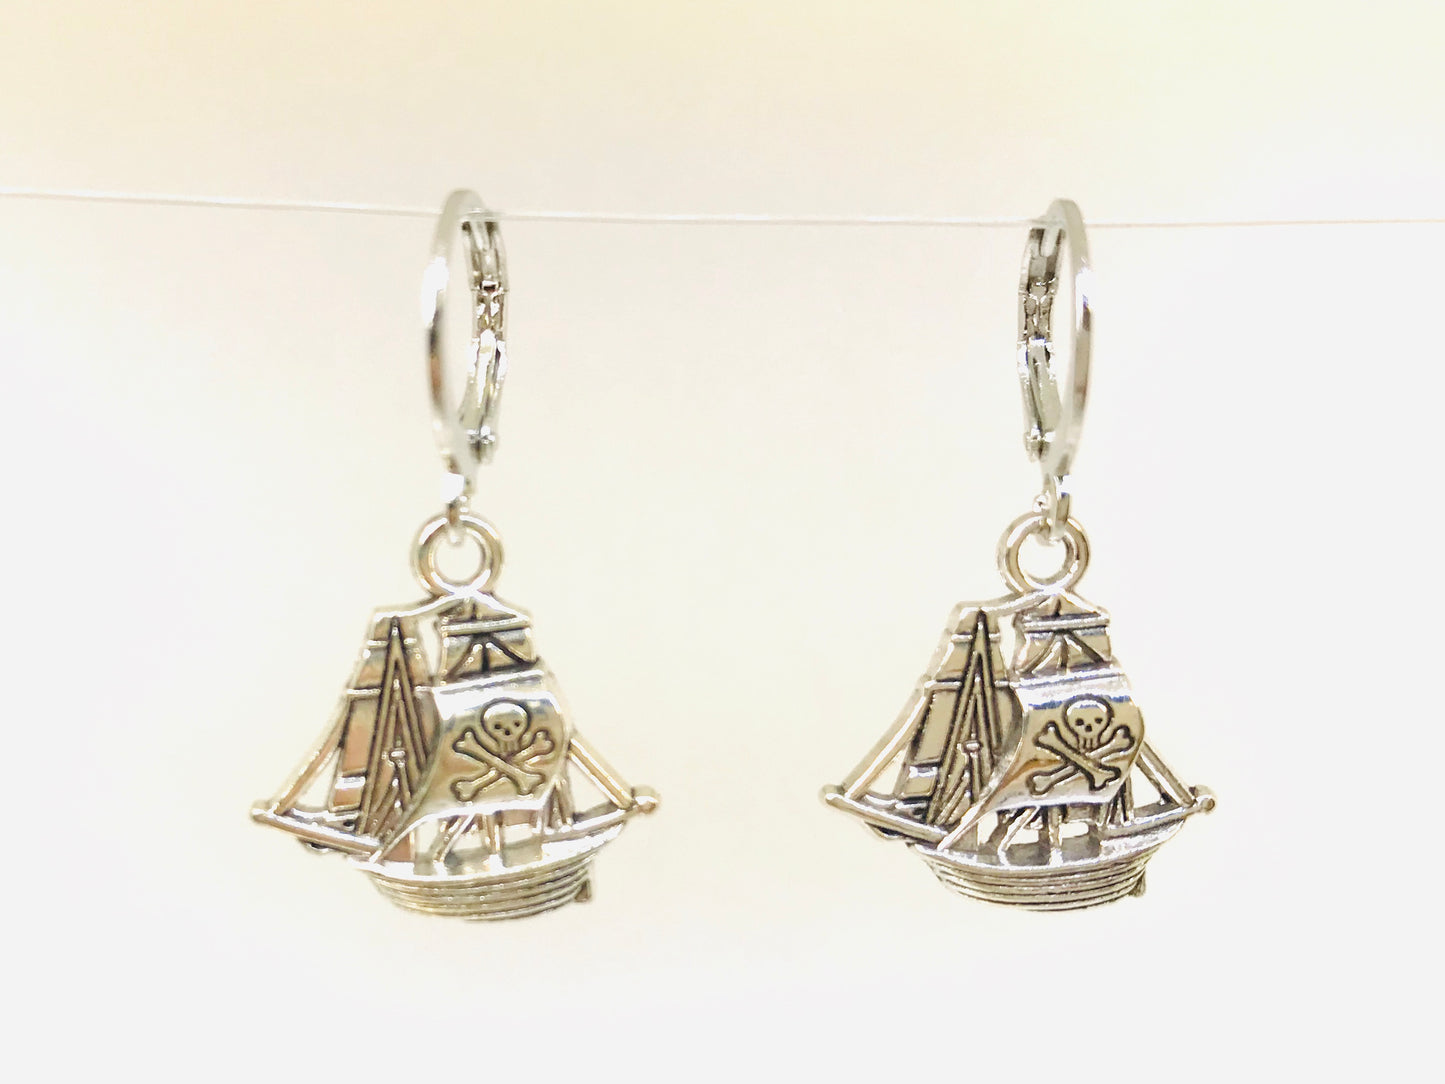 Pirate Ship Earrings